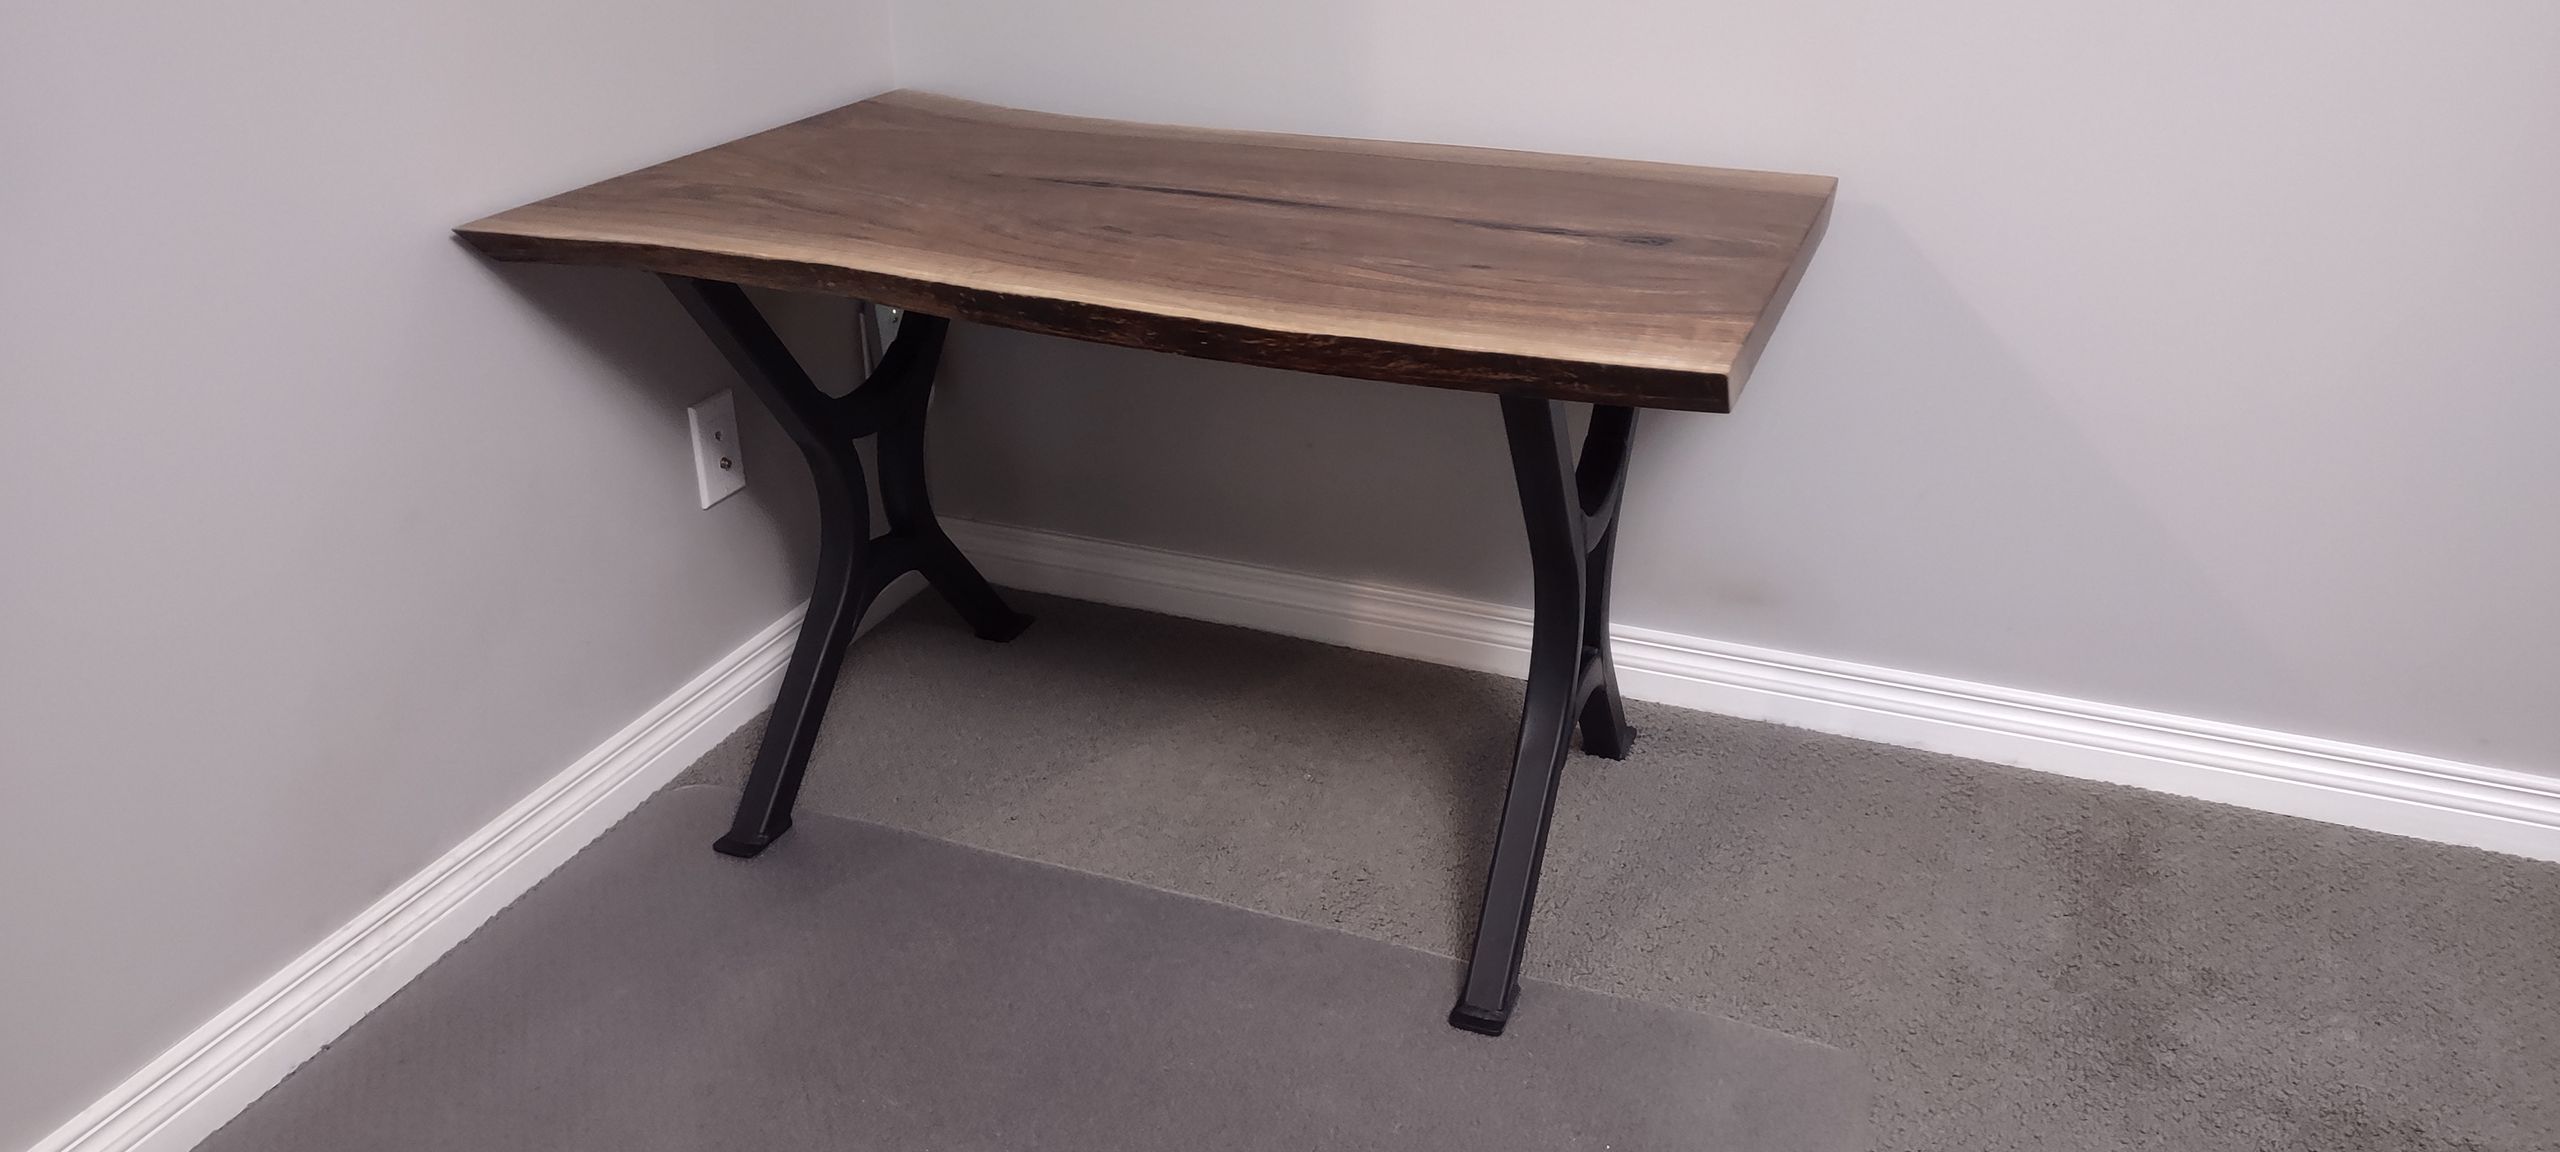 Custom table legs for office desk